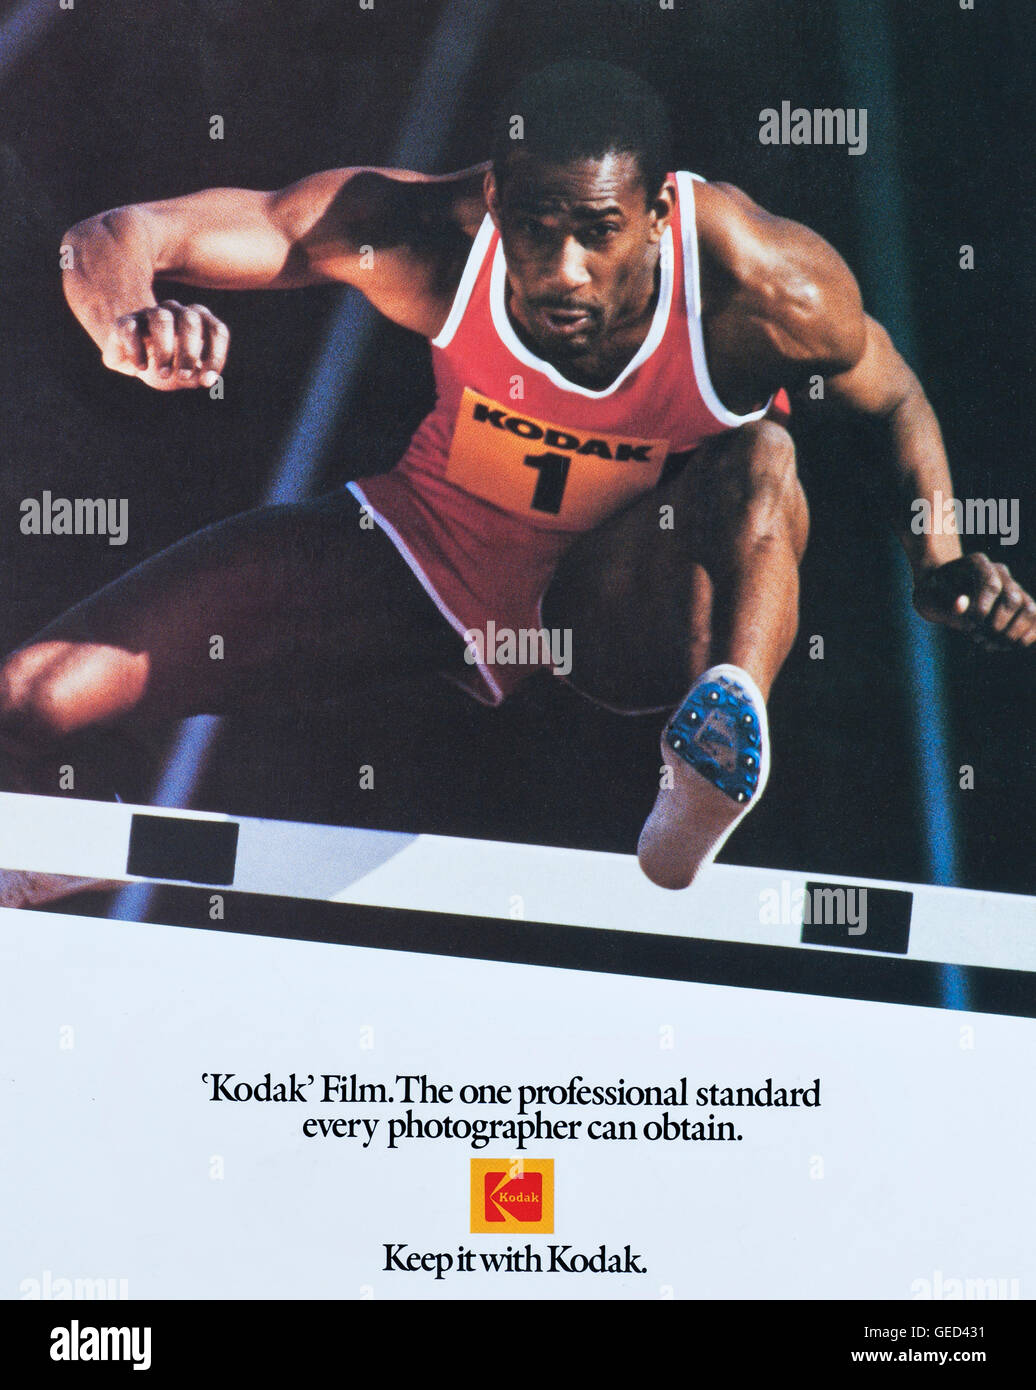 Kodak Sport poster Bild 1986 Commonwealth Games und britischen Leichtathletik Sponsoring durch Kodak Ltd von Ian Shaw Kodak Fotograf fördern Stockfoto